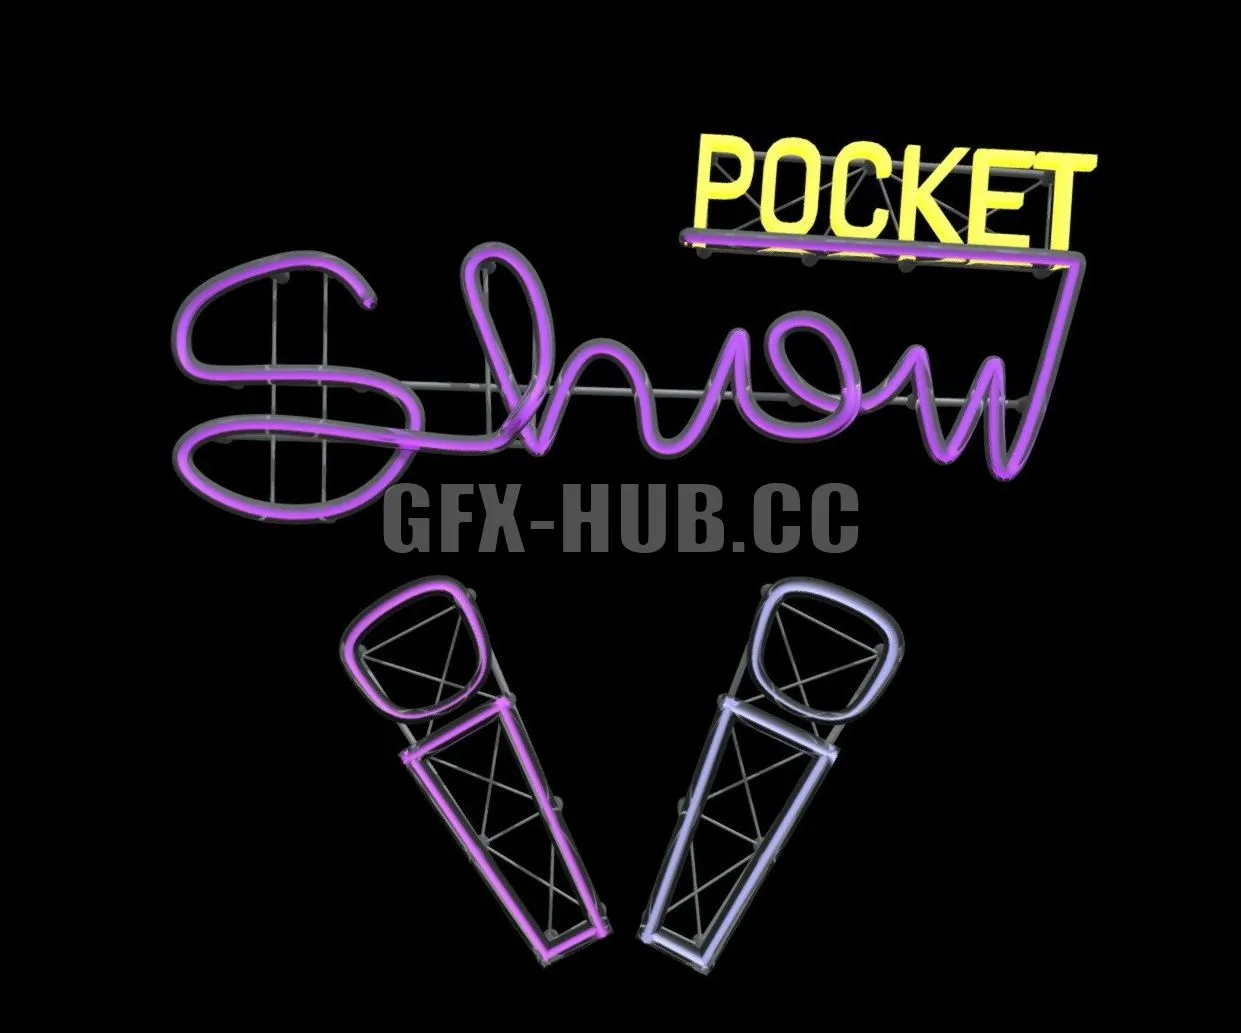 PBR Game 3D Model – Pocket Show neon sign